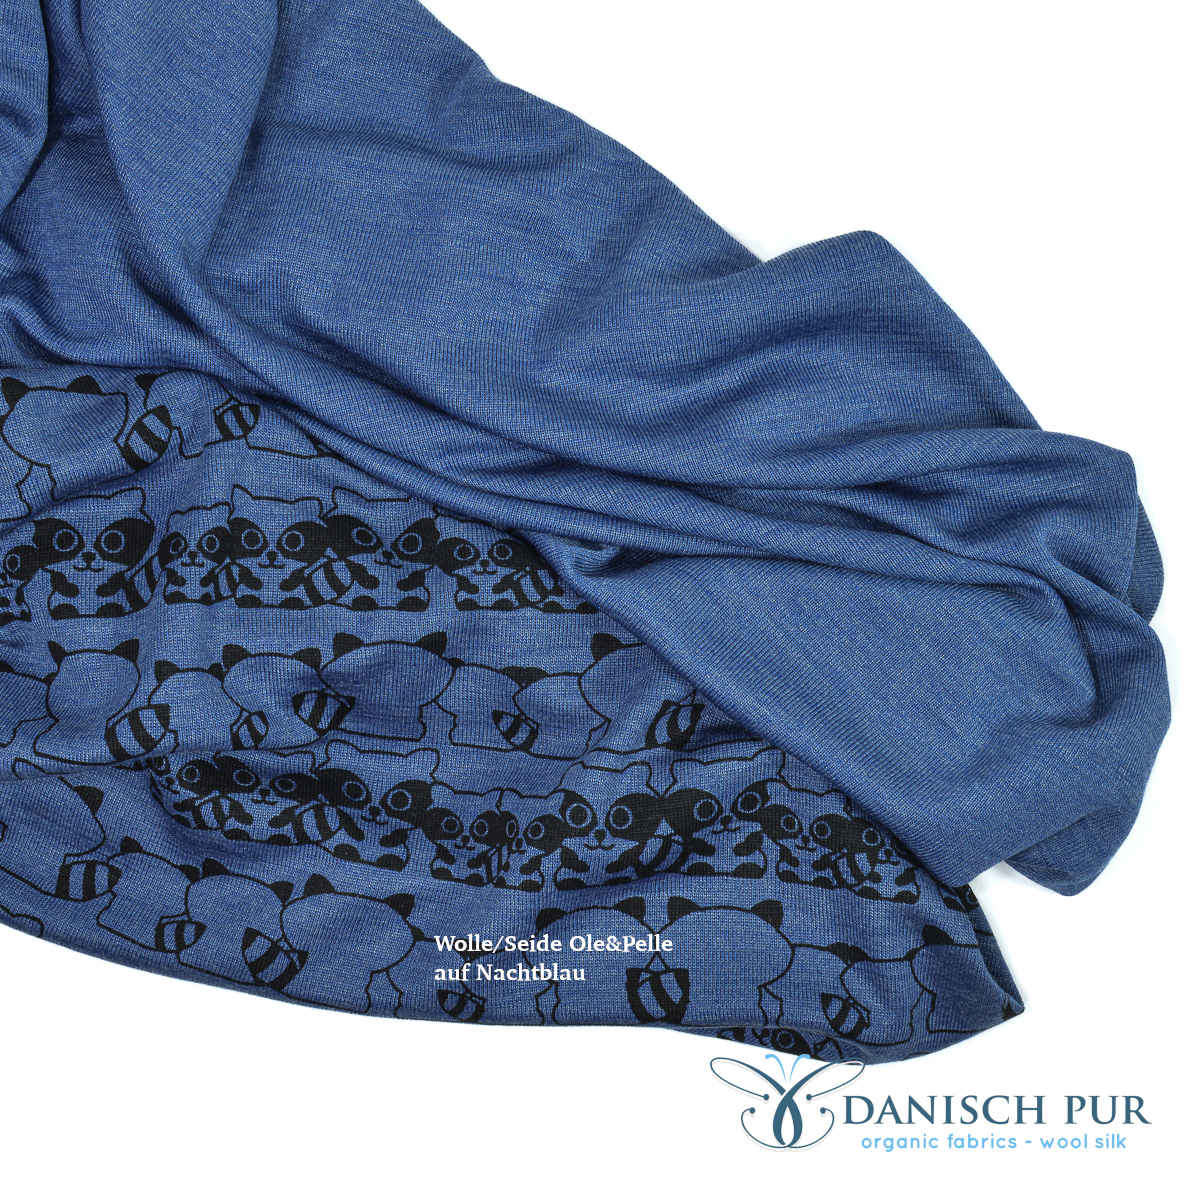 Wolle Seide Nachtblau uni und passender Kombistoff Waschbären auf Nachtblau reinhängend.